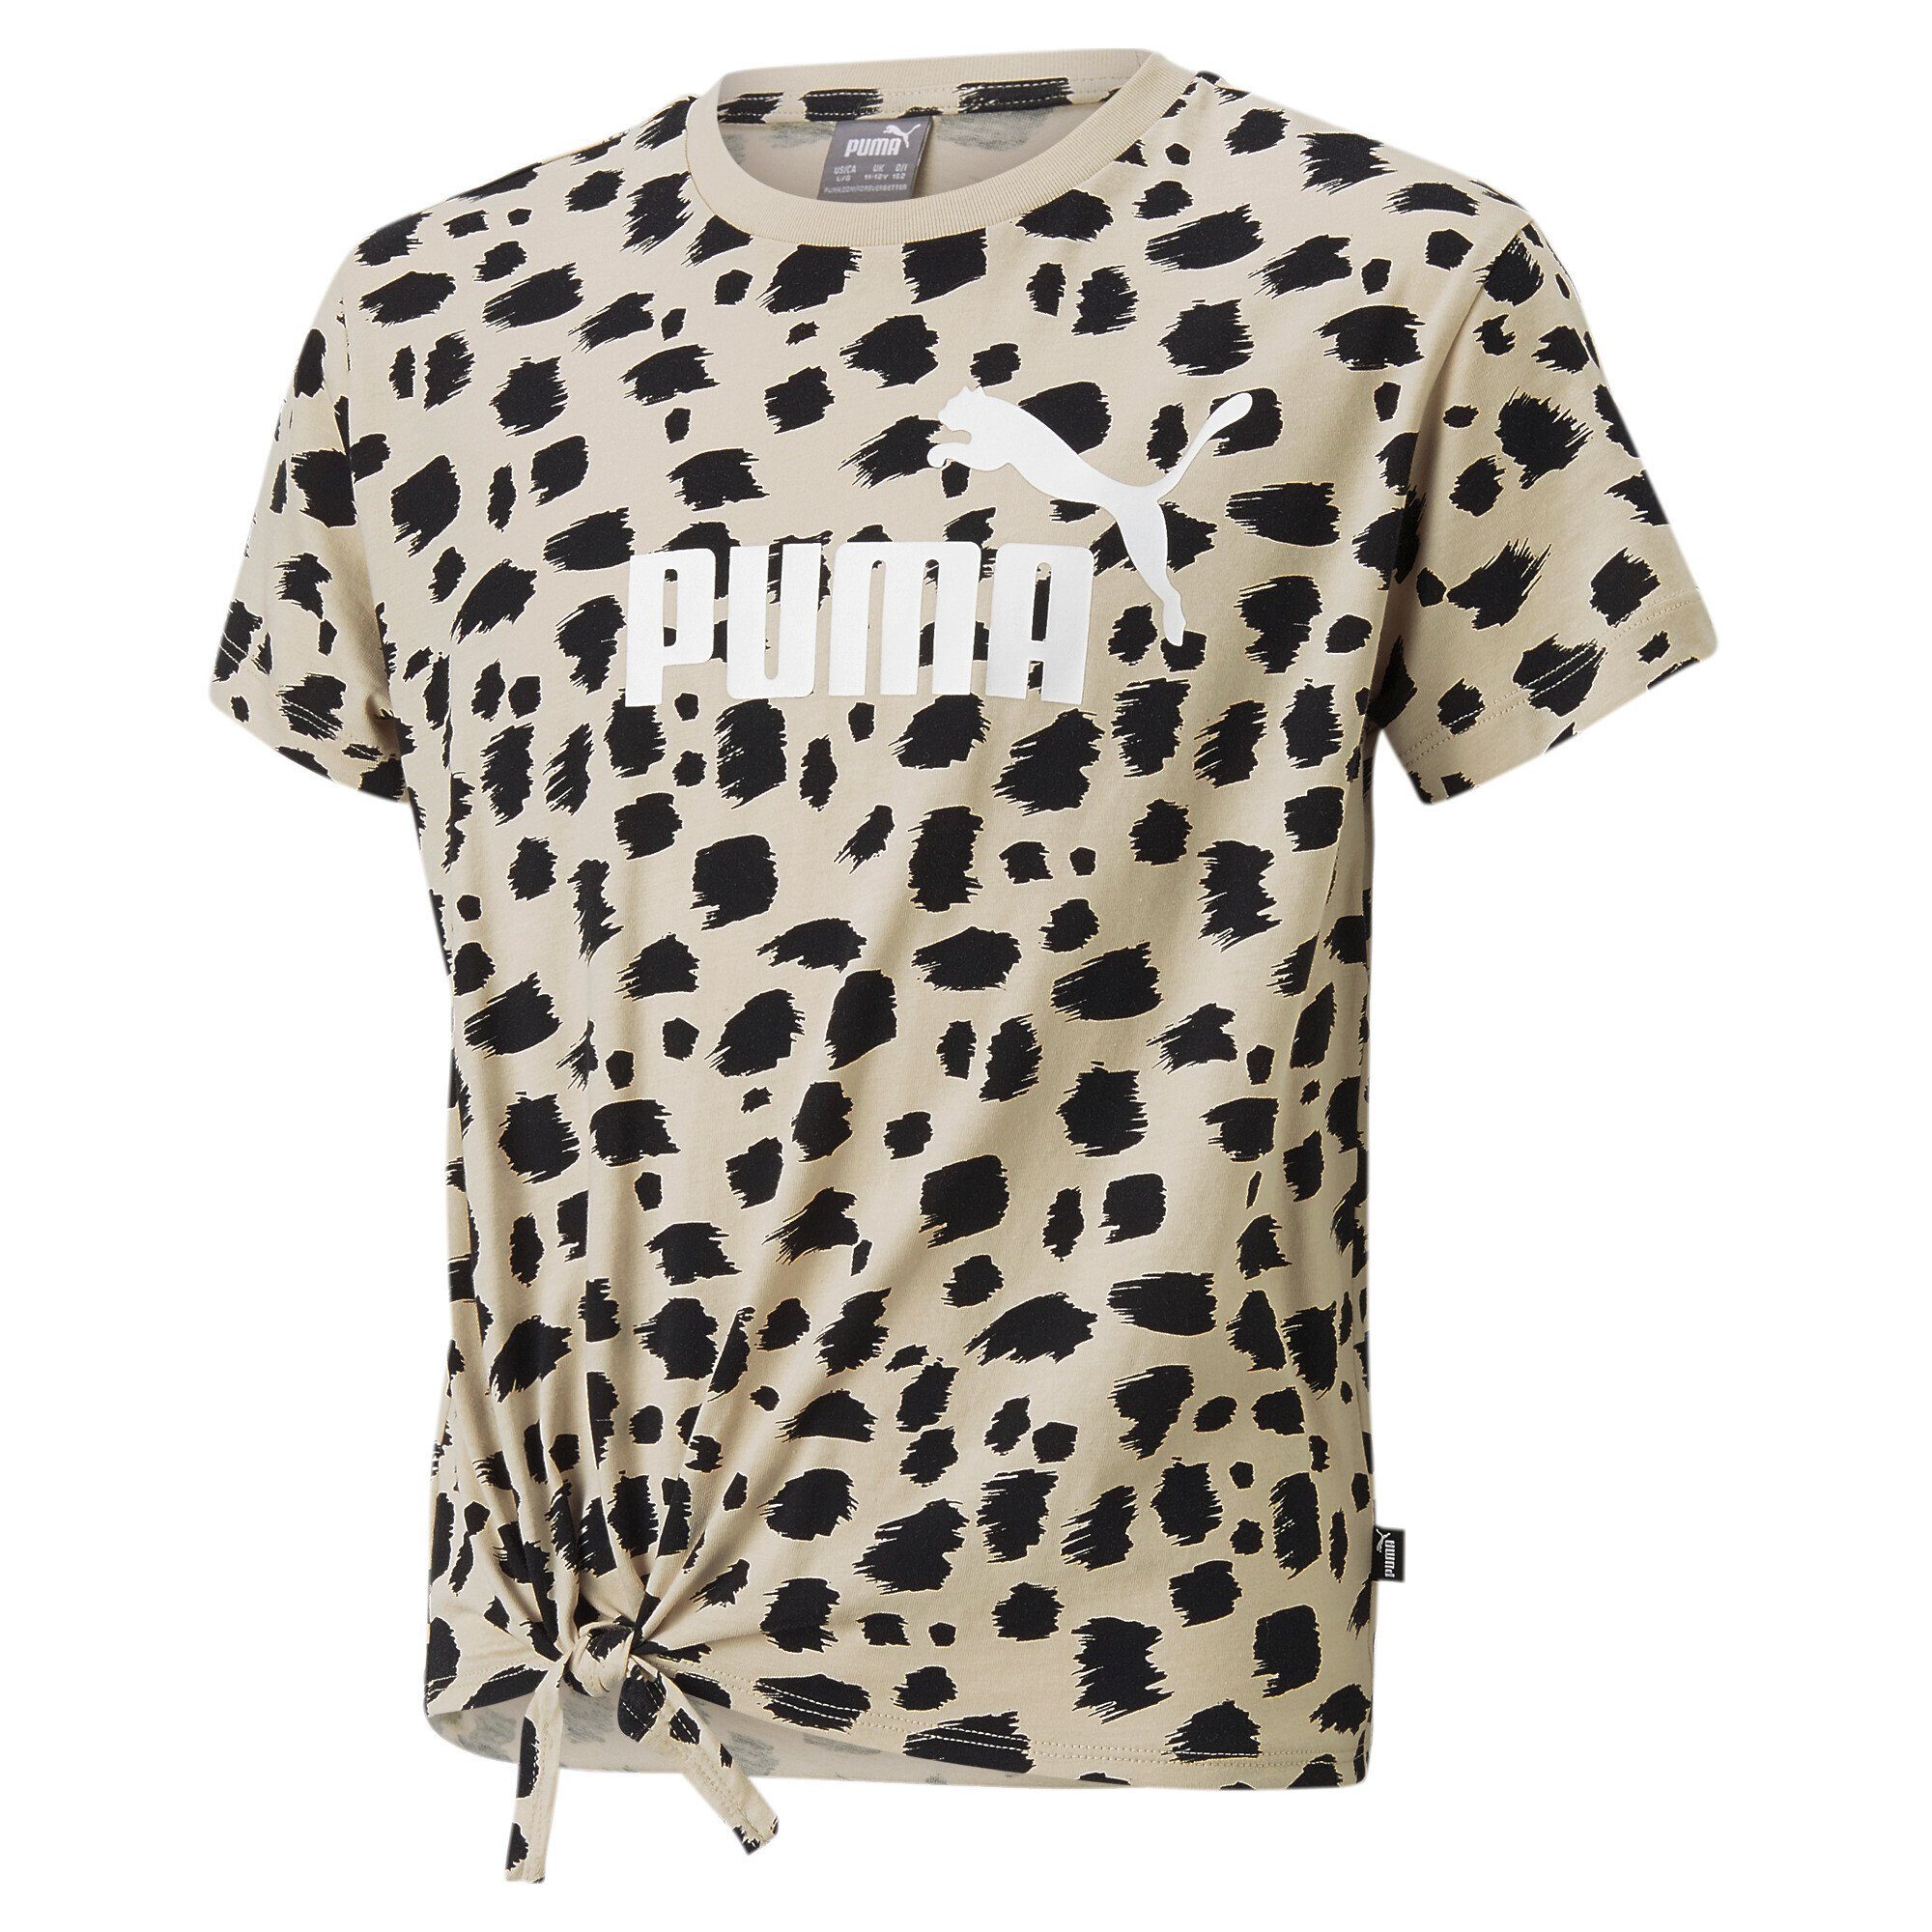 Beliebt & neu! PUMA T-Shirt Essentials+ Animal T-Shirt Jugendliche Granola Knotted Printed Beige